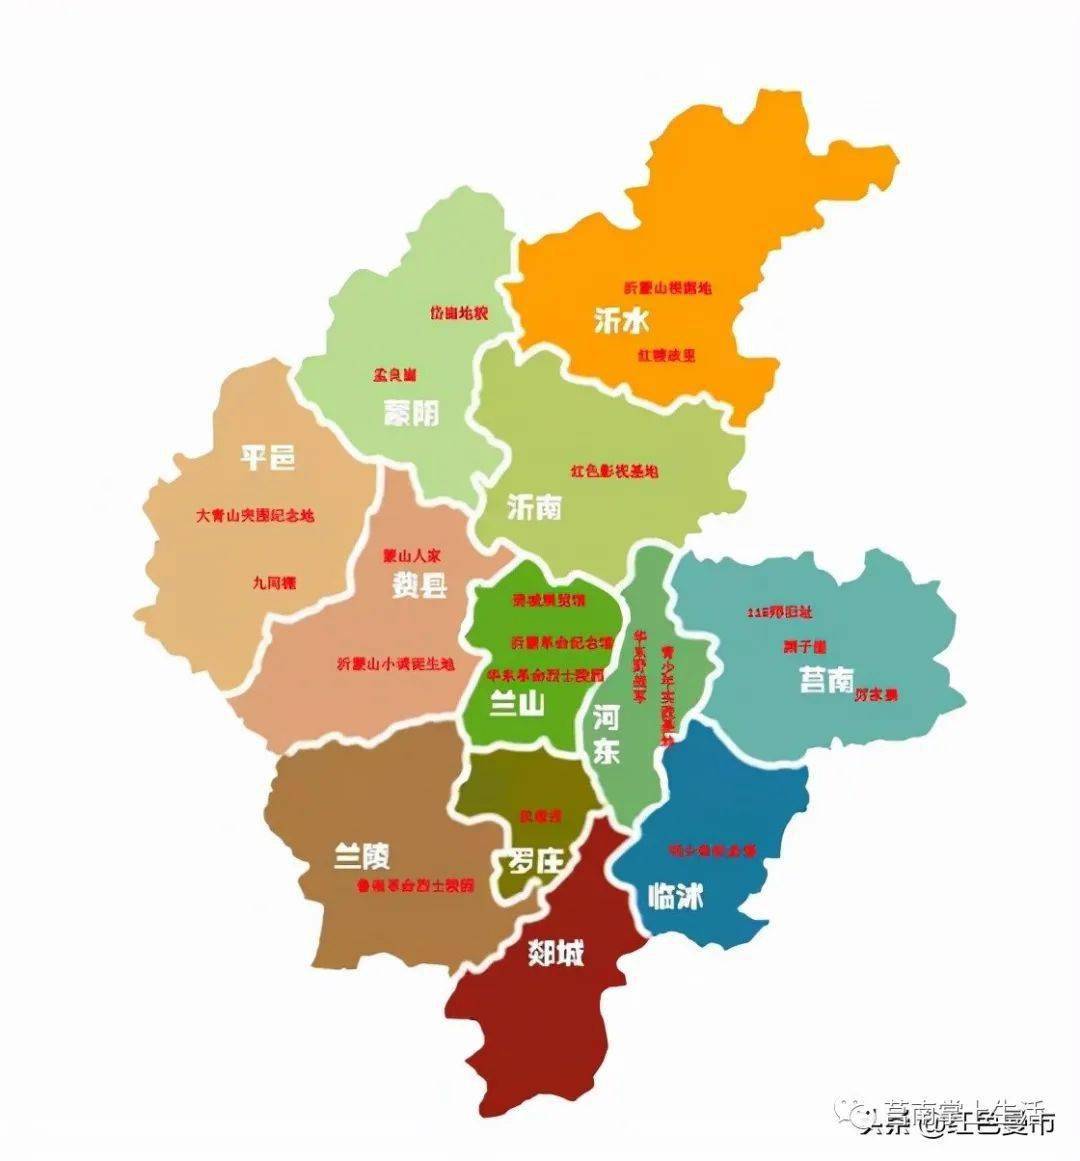 临沂最东部县-莒南,拥有大型产业集群,两座高铁站,两